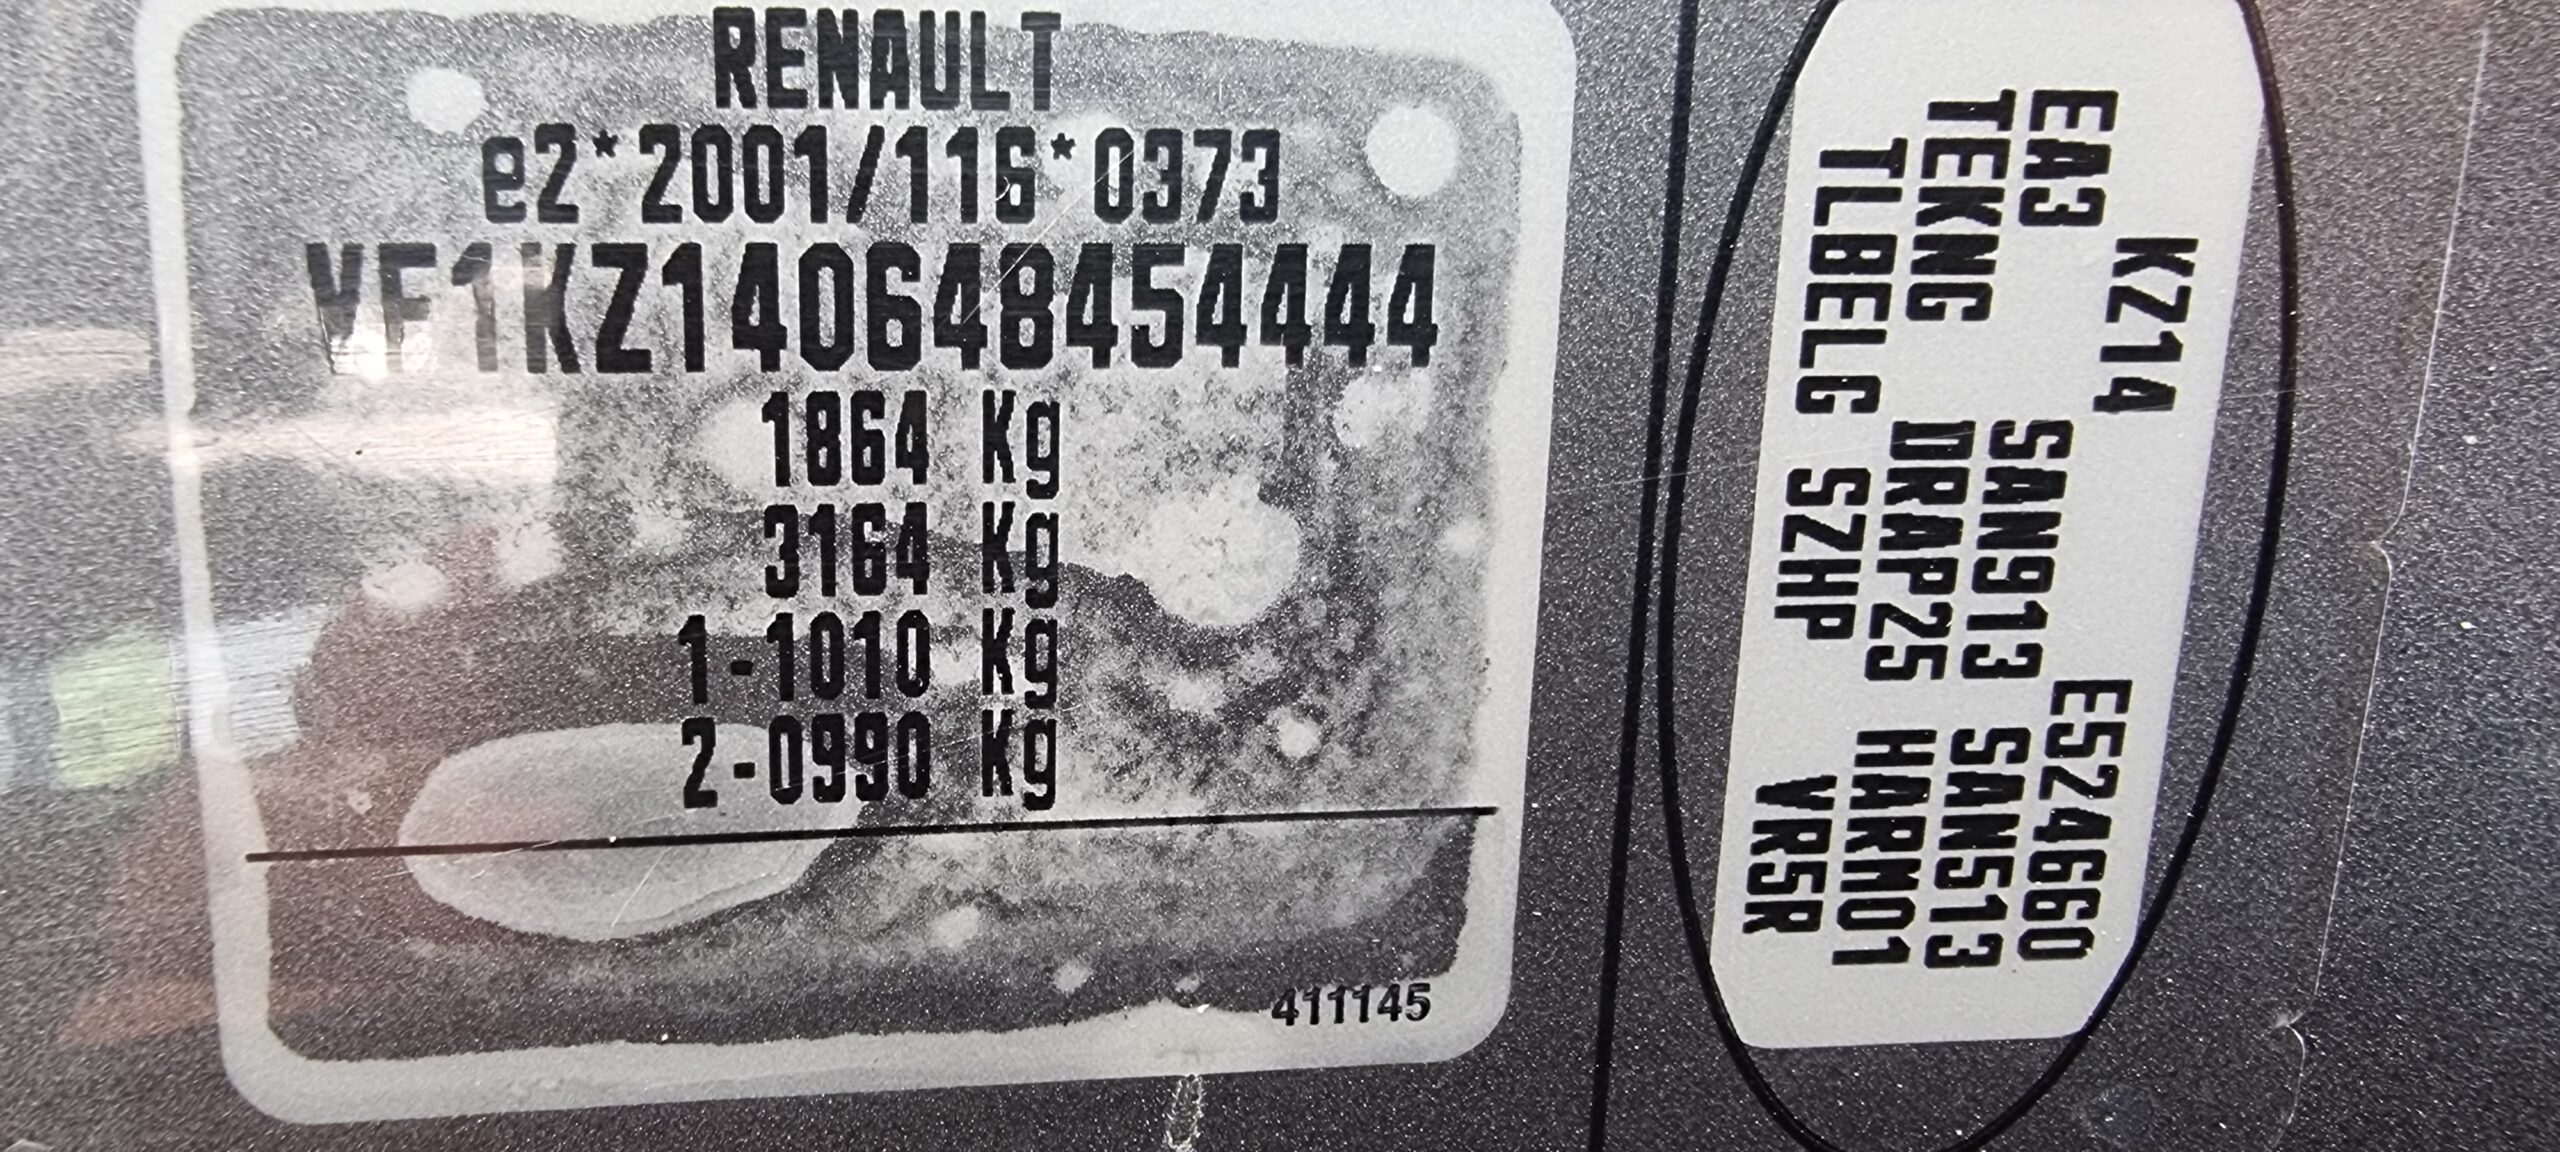 RENAULT MEGANE 1.5 DCI, 110 CP, EURO 5, AN 2013